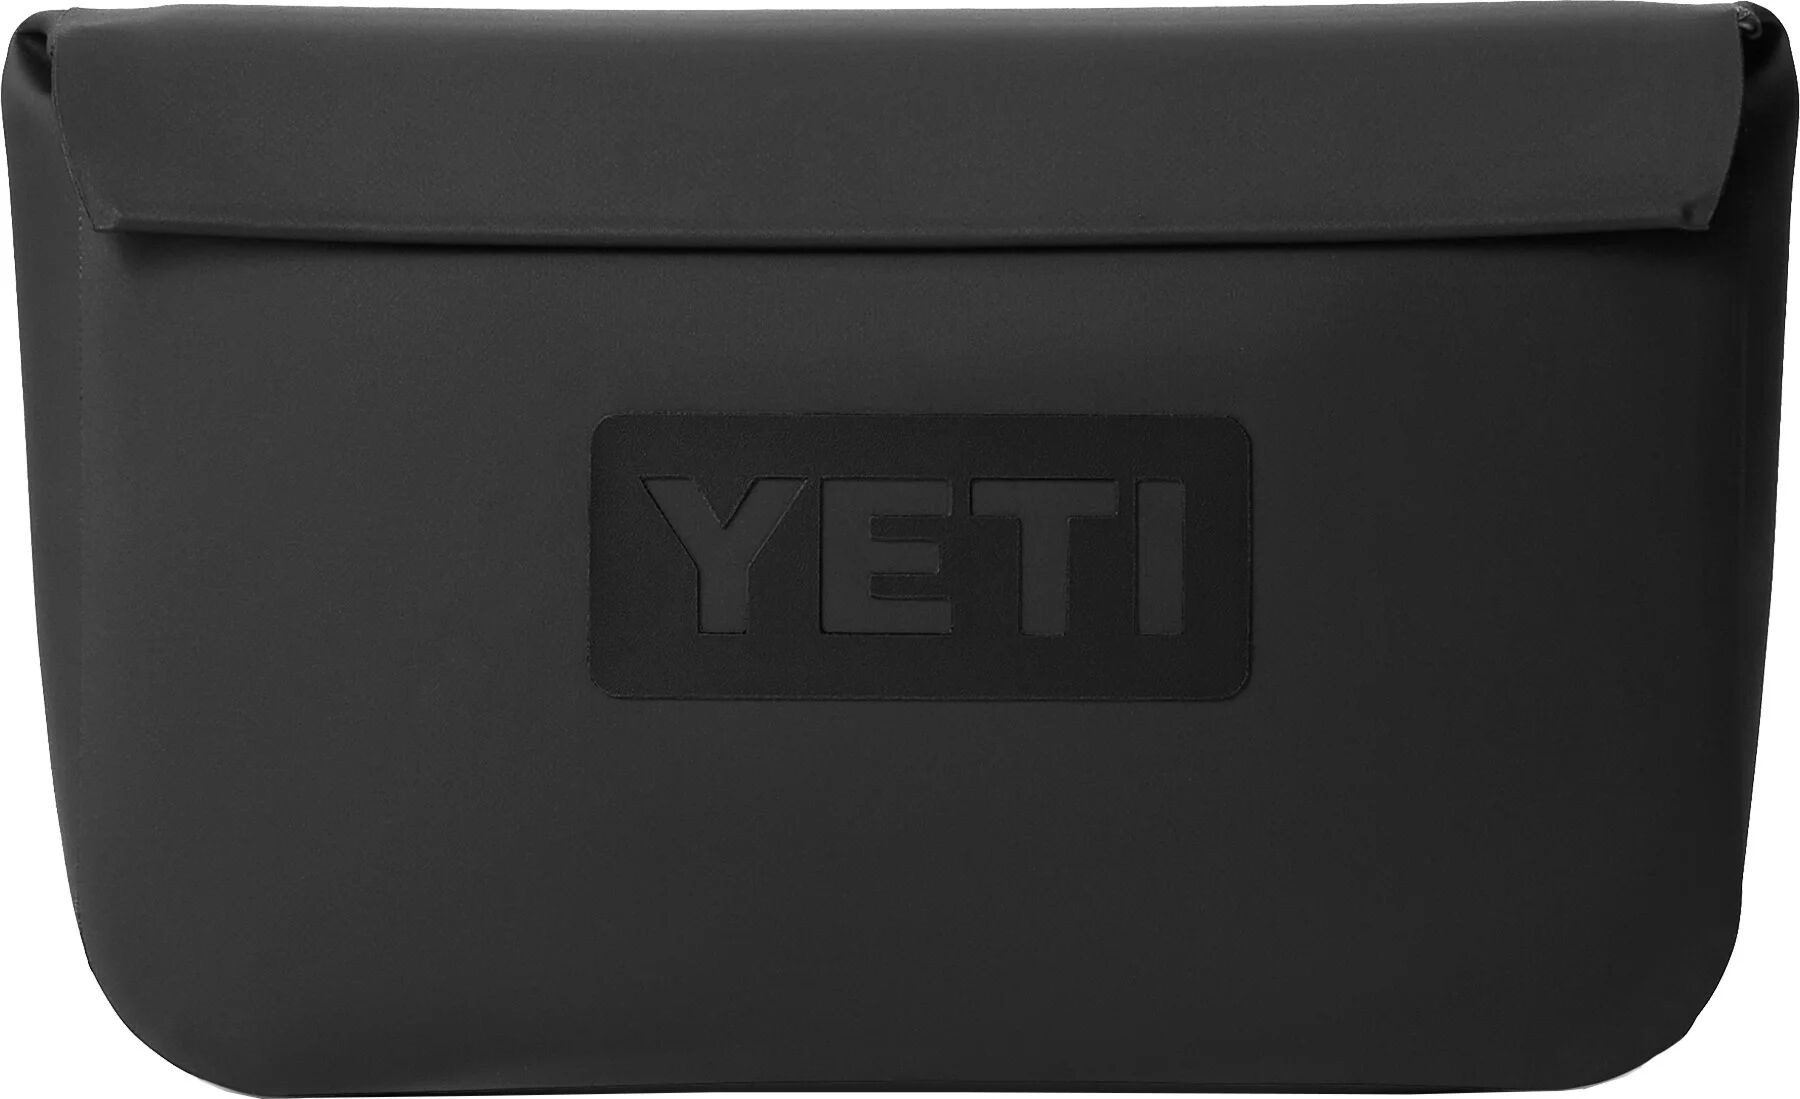 YETI Sidekick Dry 3L Gear Case, Black